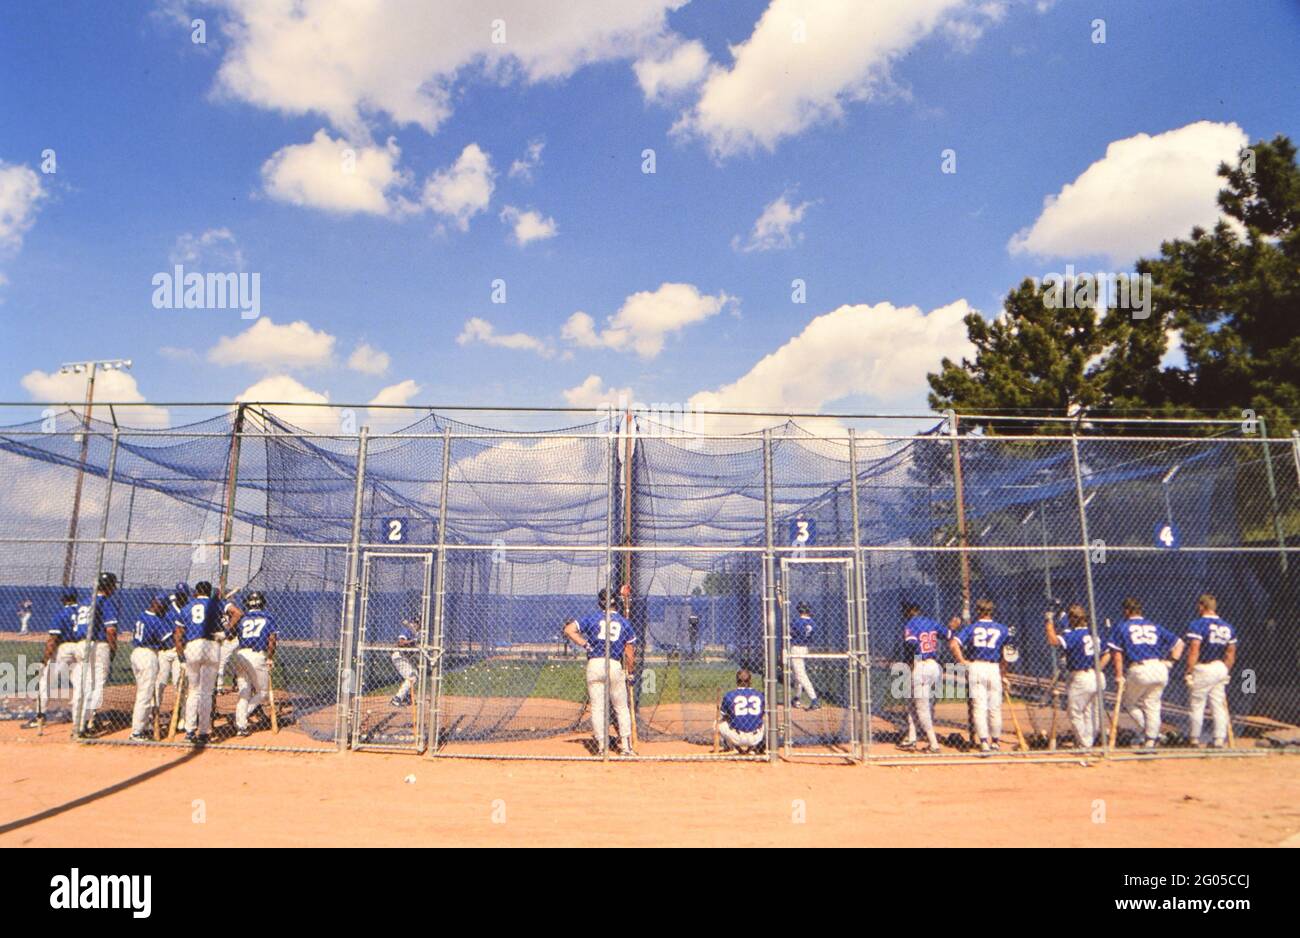 Major League Baseballspieler in Schlagkäfigen während des Frühjahrstrainings -- Bitte schreiben Sie der Fotografin Kirk Schlea Anerkennung Stockfoto